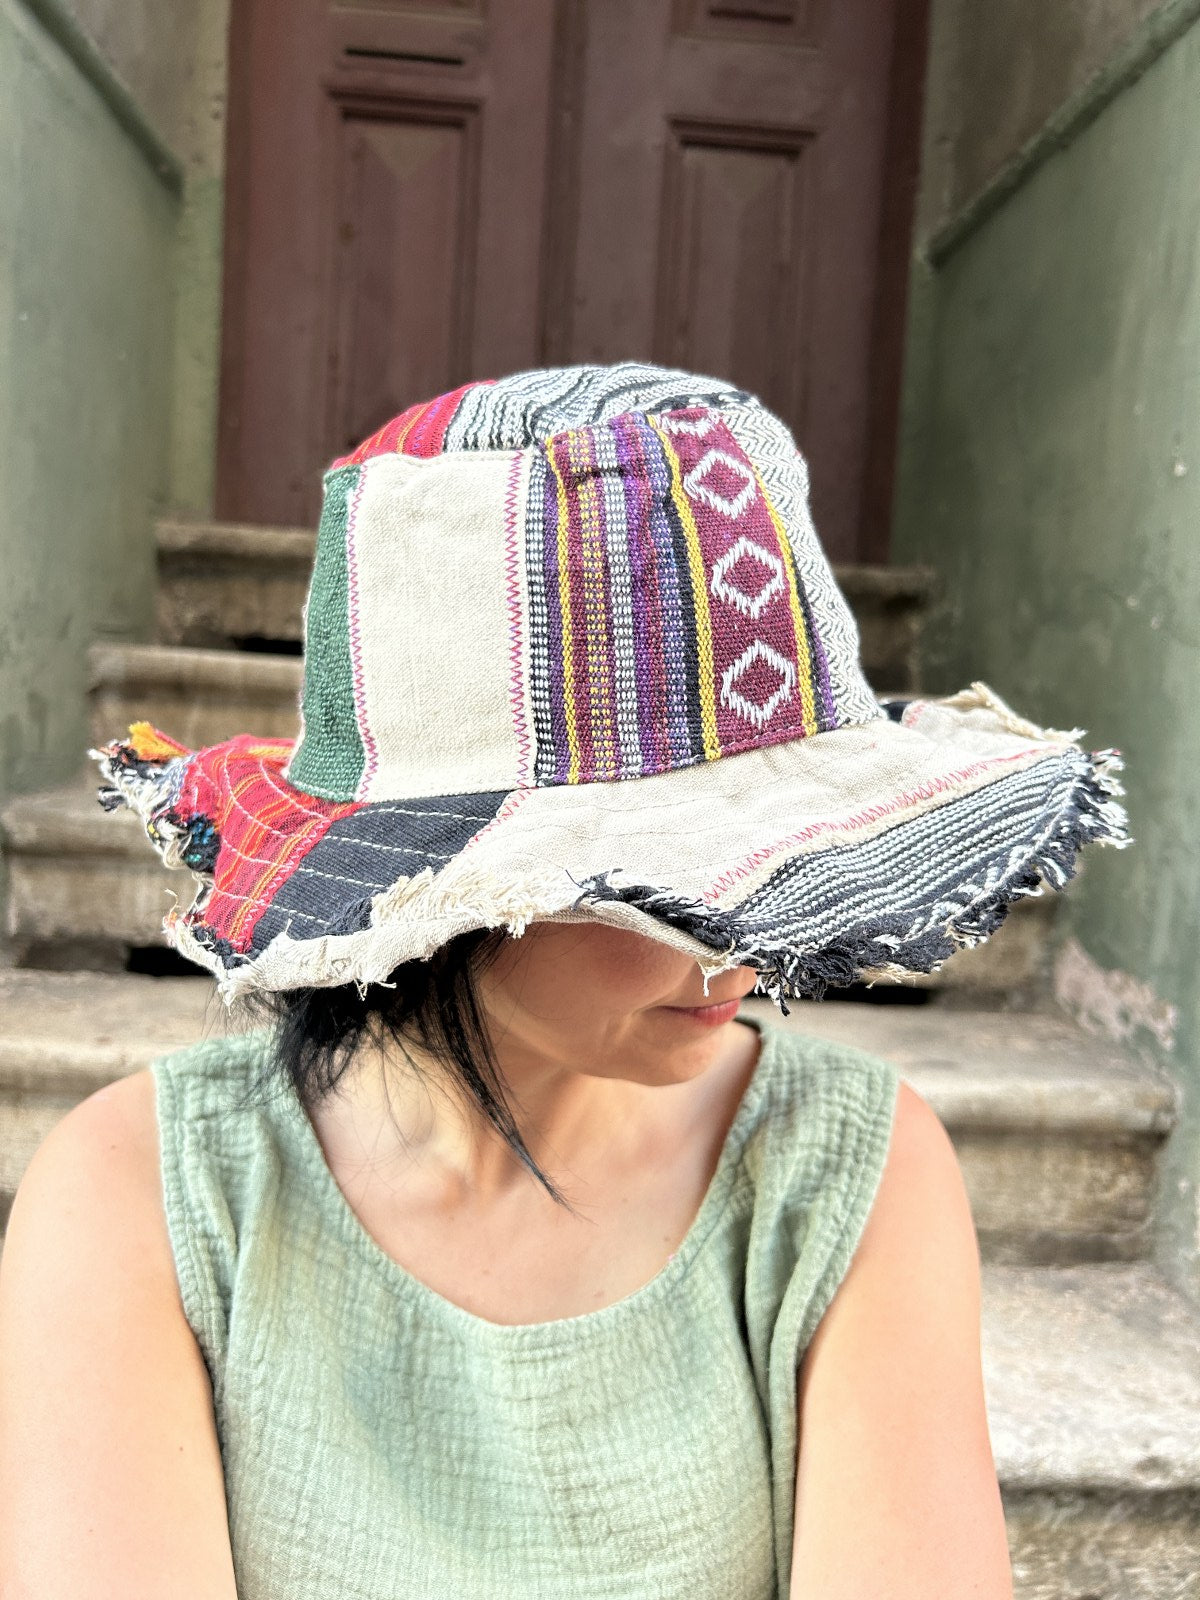 Unisex Nepal Pure Hemp gri kırmızı patchwork şapka, %100 pamuk ve hemp kumaşlardan el yapımı, farklı renk ve desenlerle bohem tarzda.